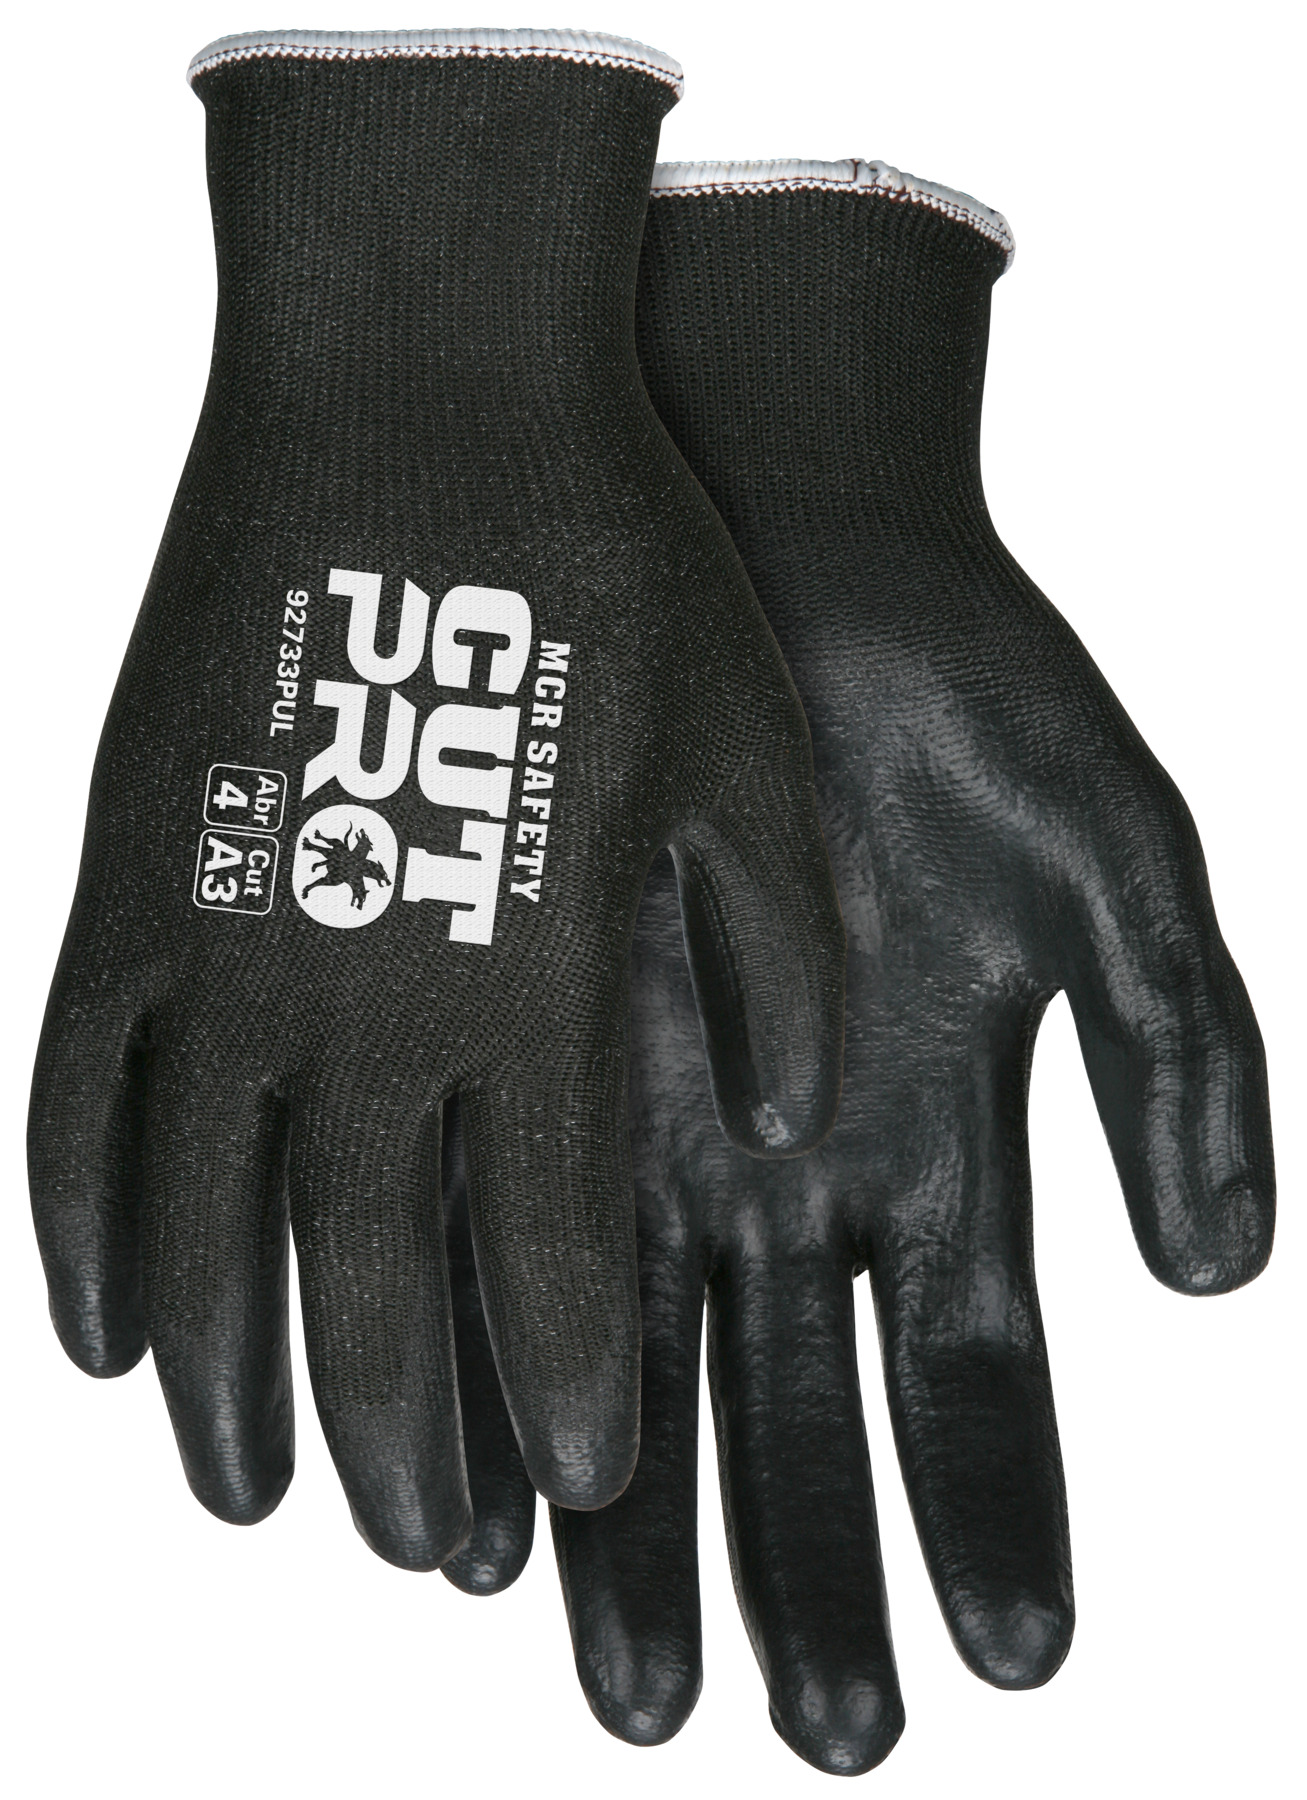 MEMPHIS CUT PRO PU PALM COATED - Cut Resistant Gloves